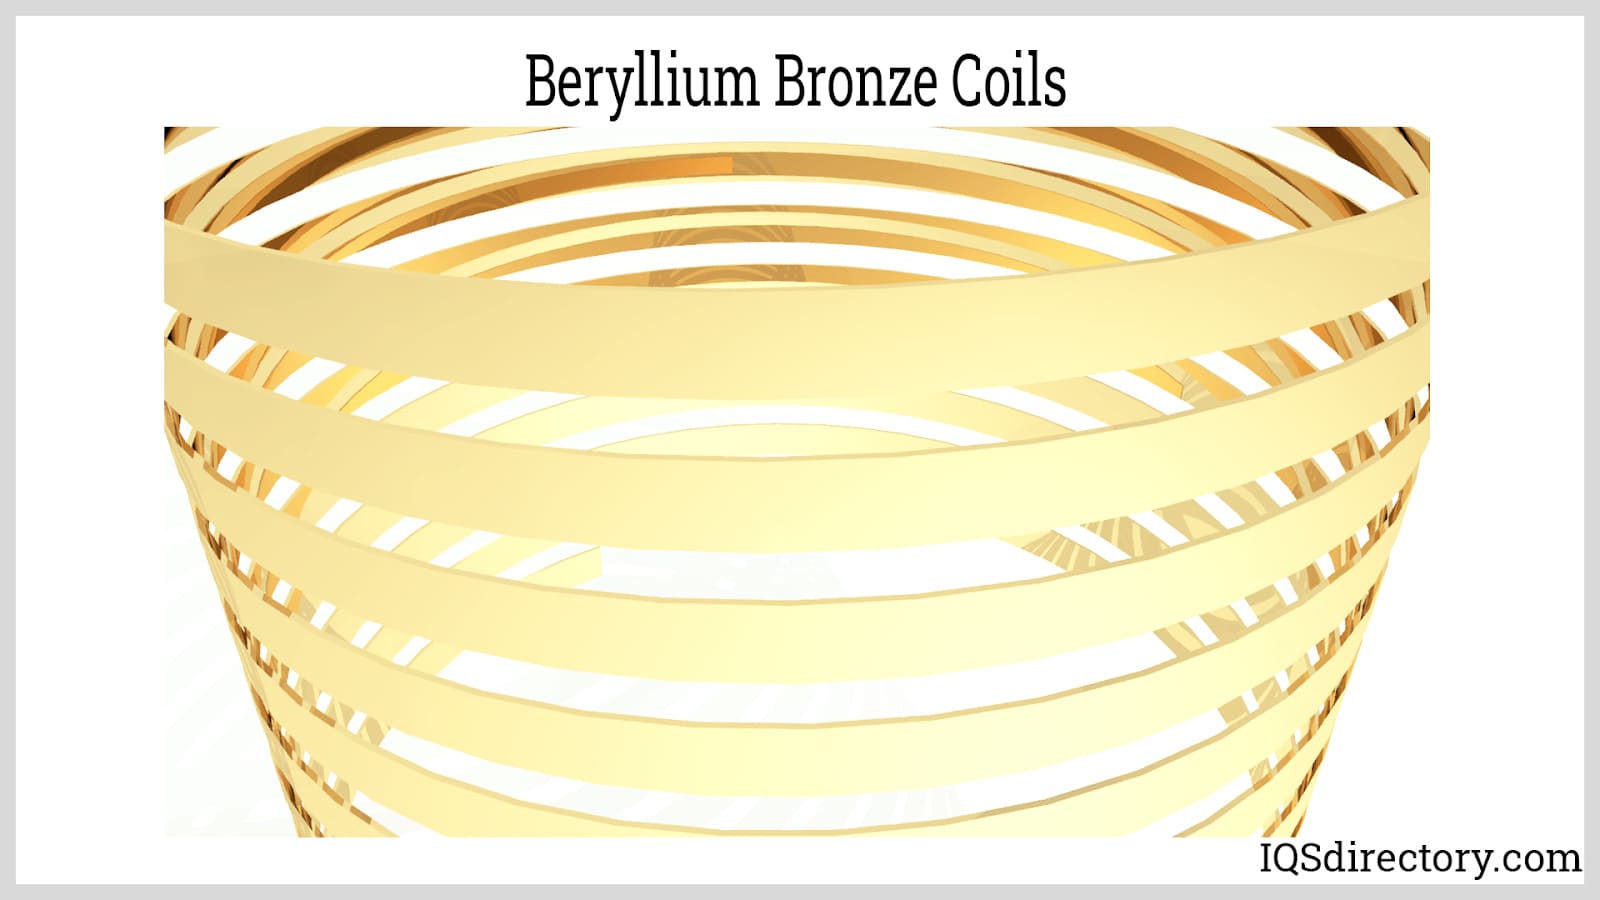 Beryllium Bronze Coils